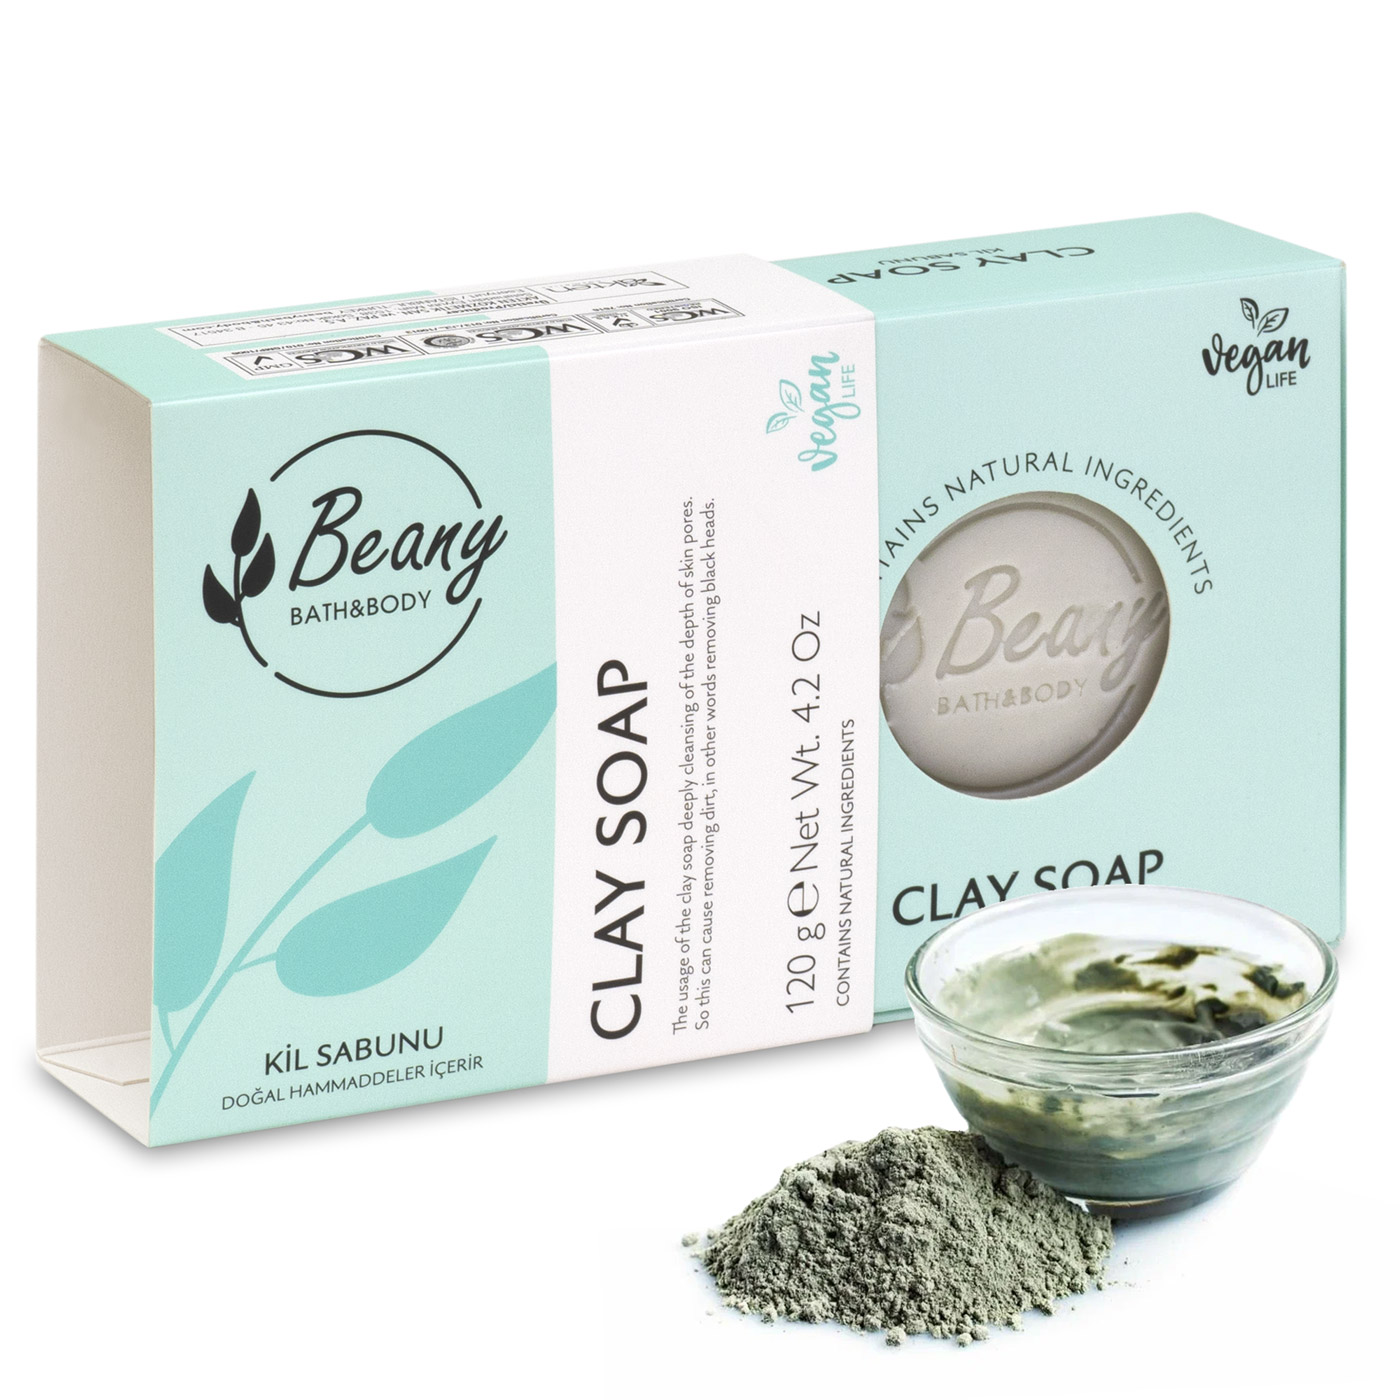 Мыло Beany твердое натуральное турецкое Clay Extract Soap с экстрактом глины мыло beany твердое натуральное турецкое clay extract soap с экстрактом глины